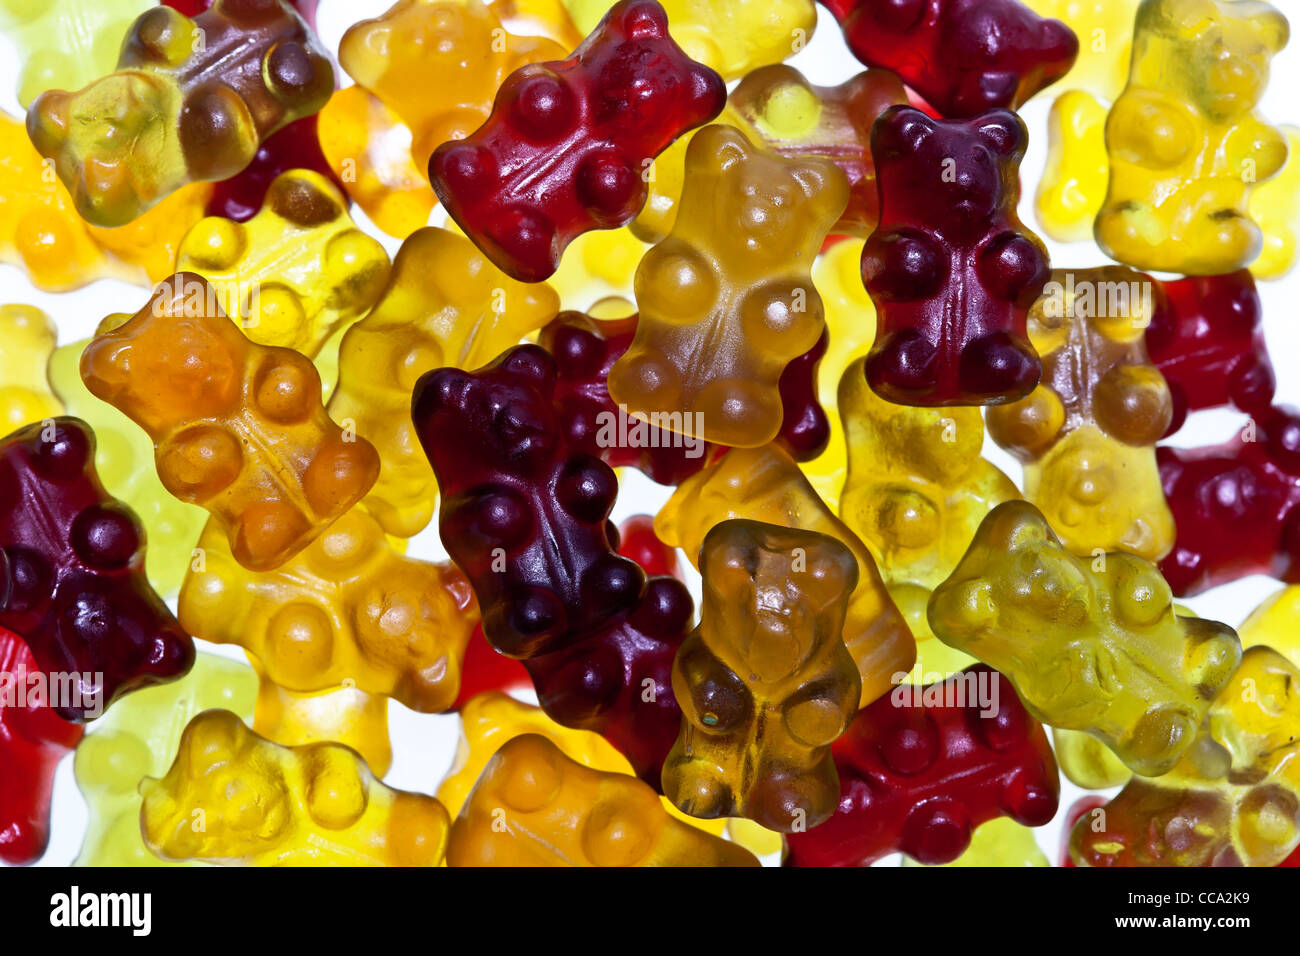 Organici di gummi bears senza gelatina, colorato e aromatizzato con succo di frutta Foto Stock